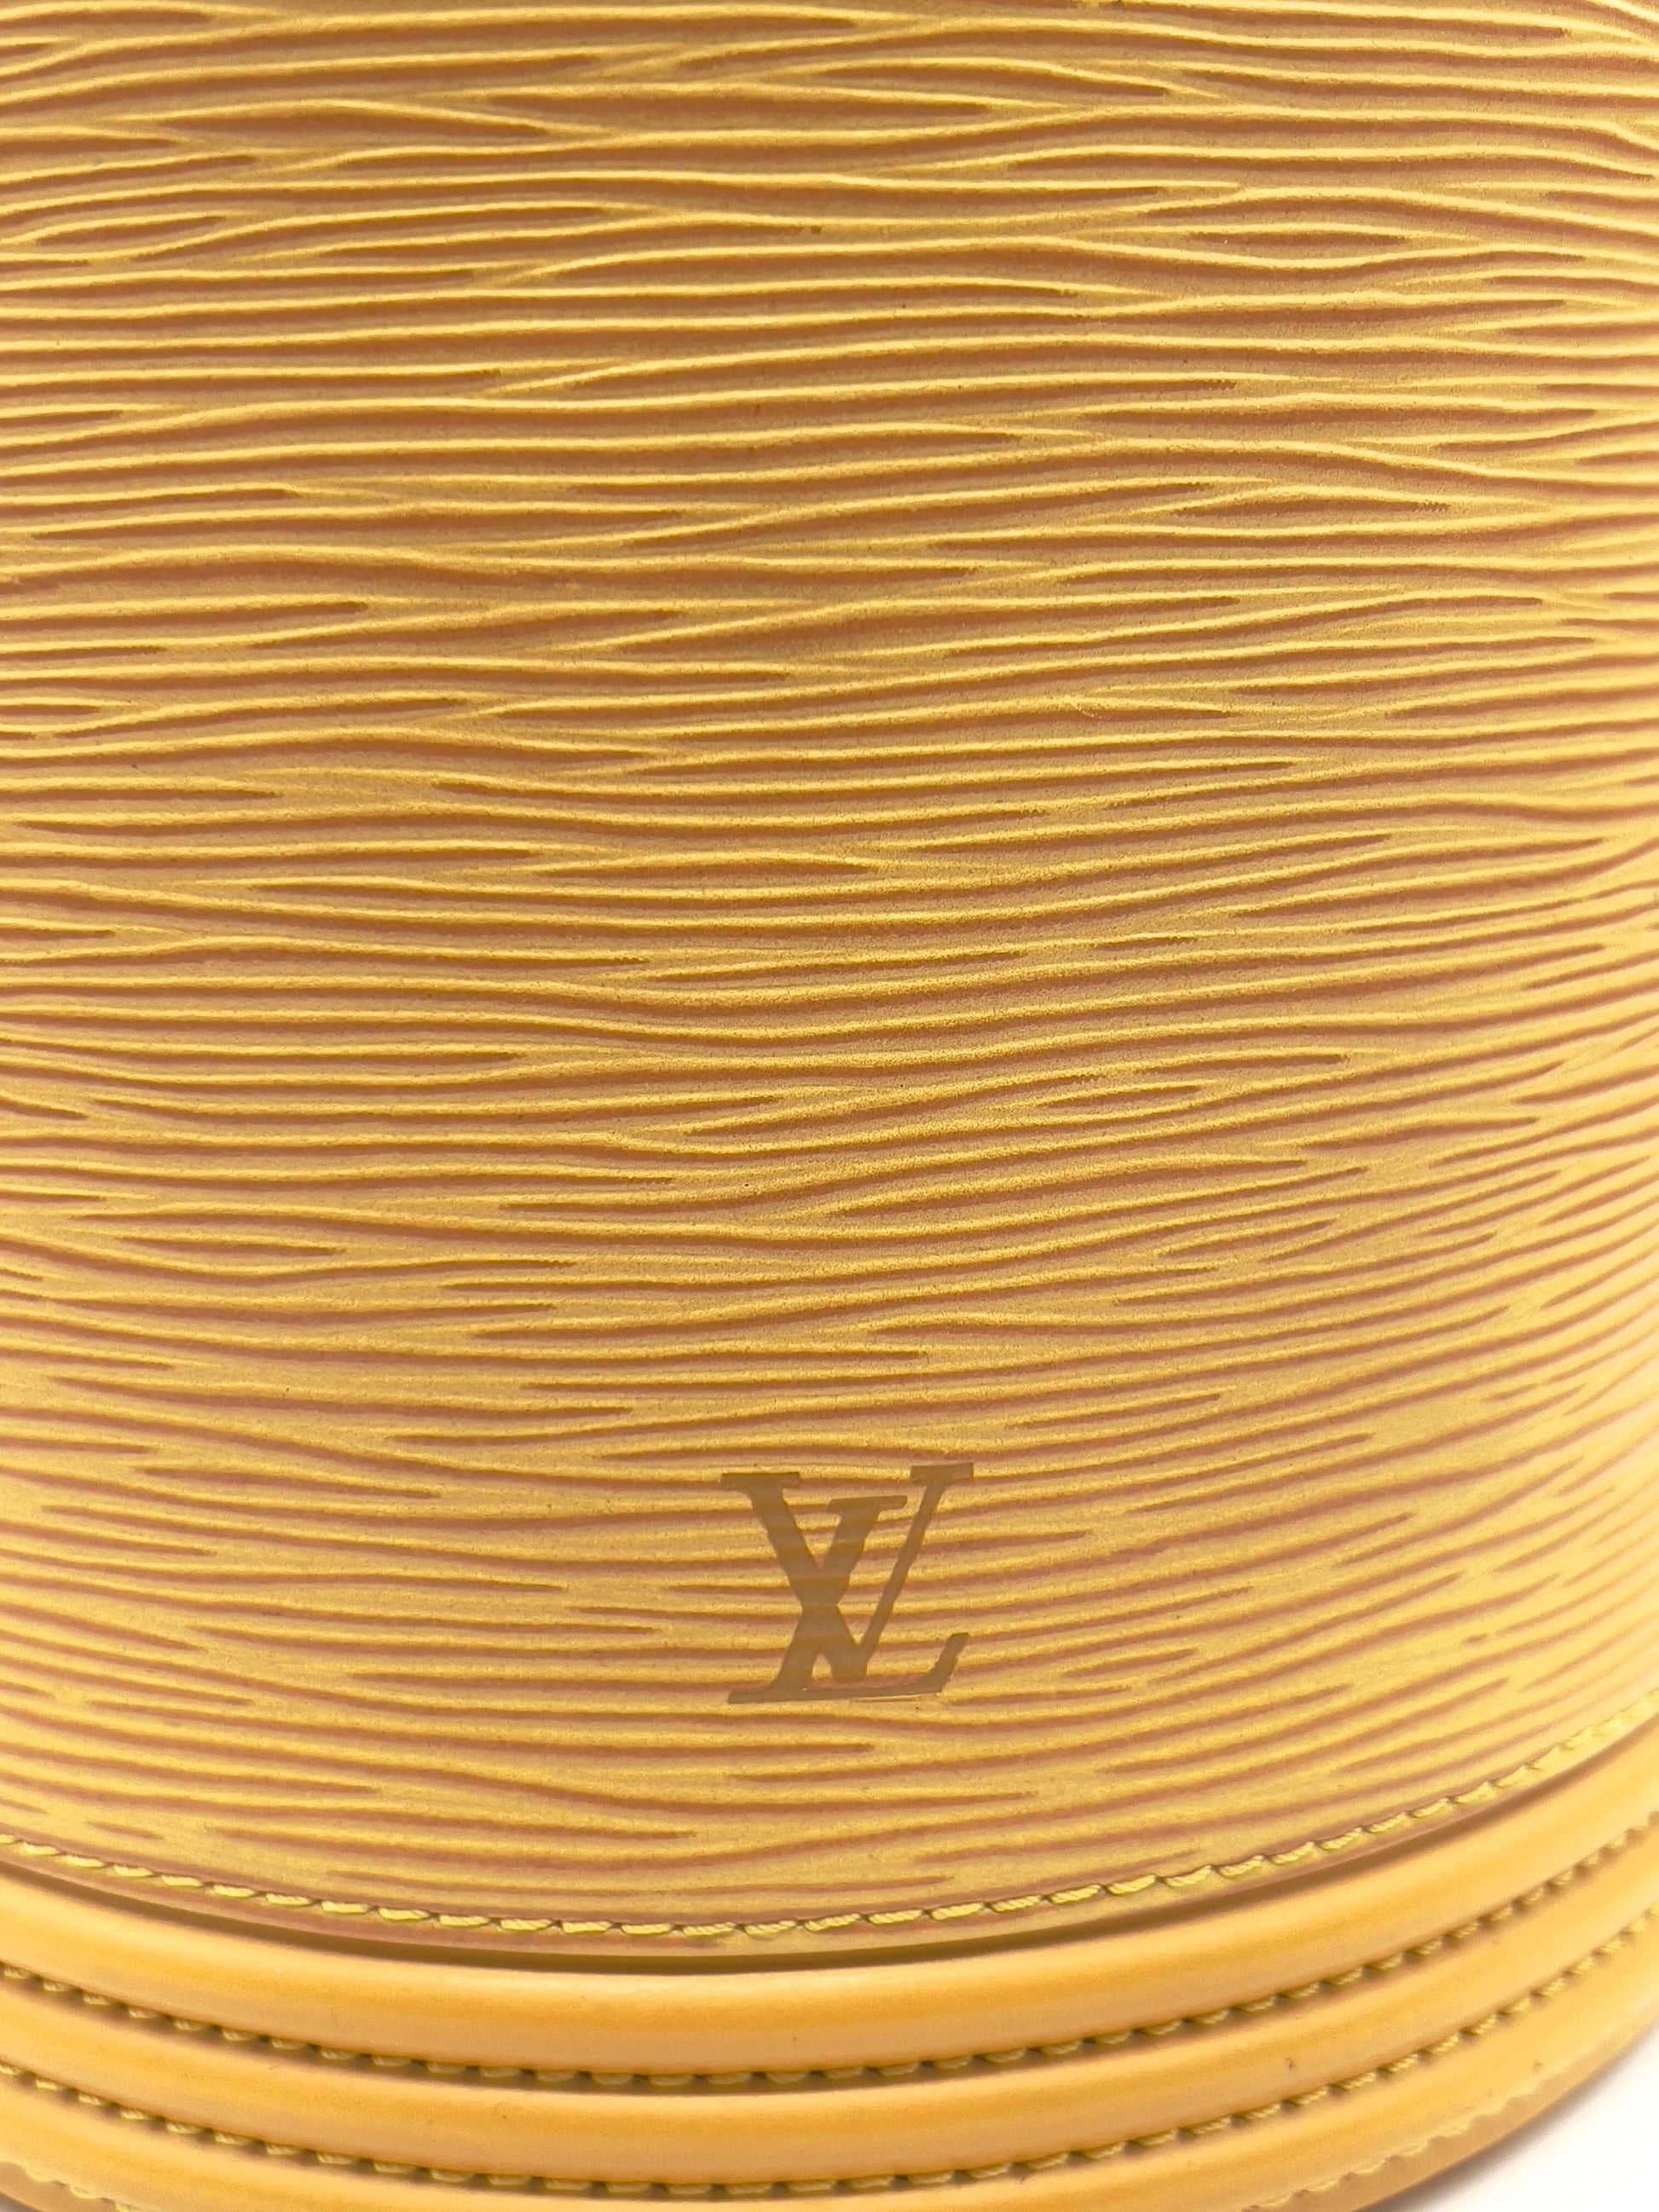 Shop Louis Vuitton EPI Cannes (M52226) by SkyNS